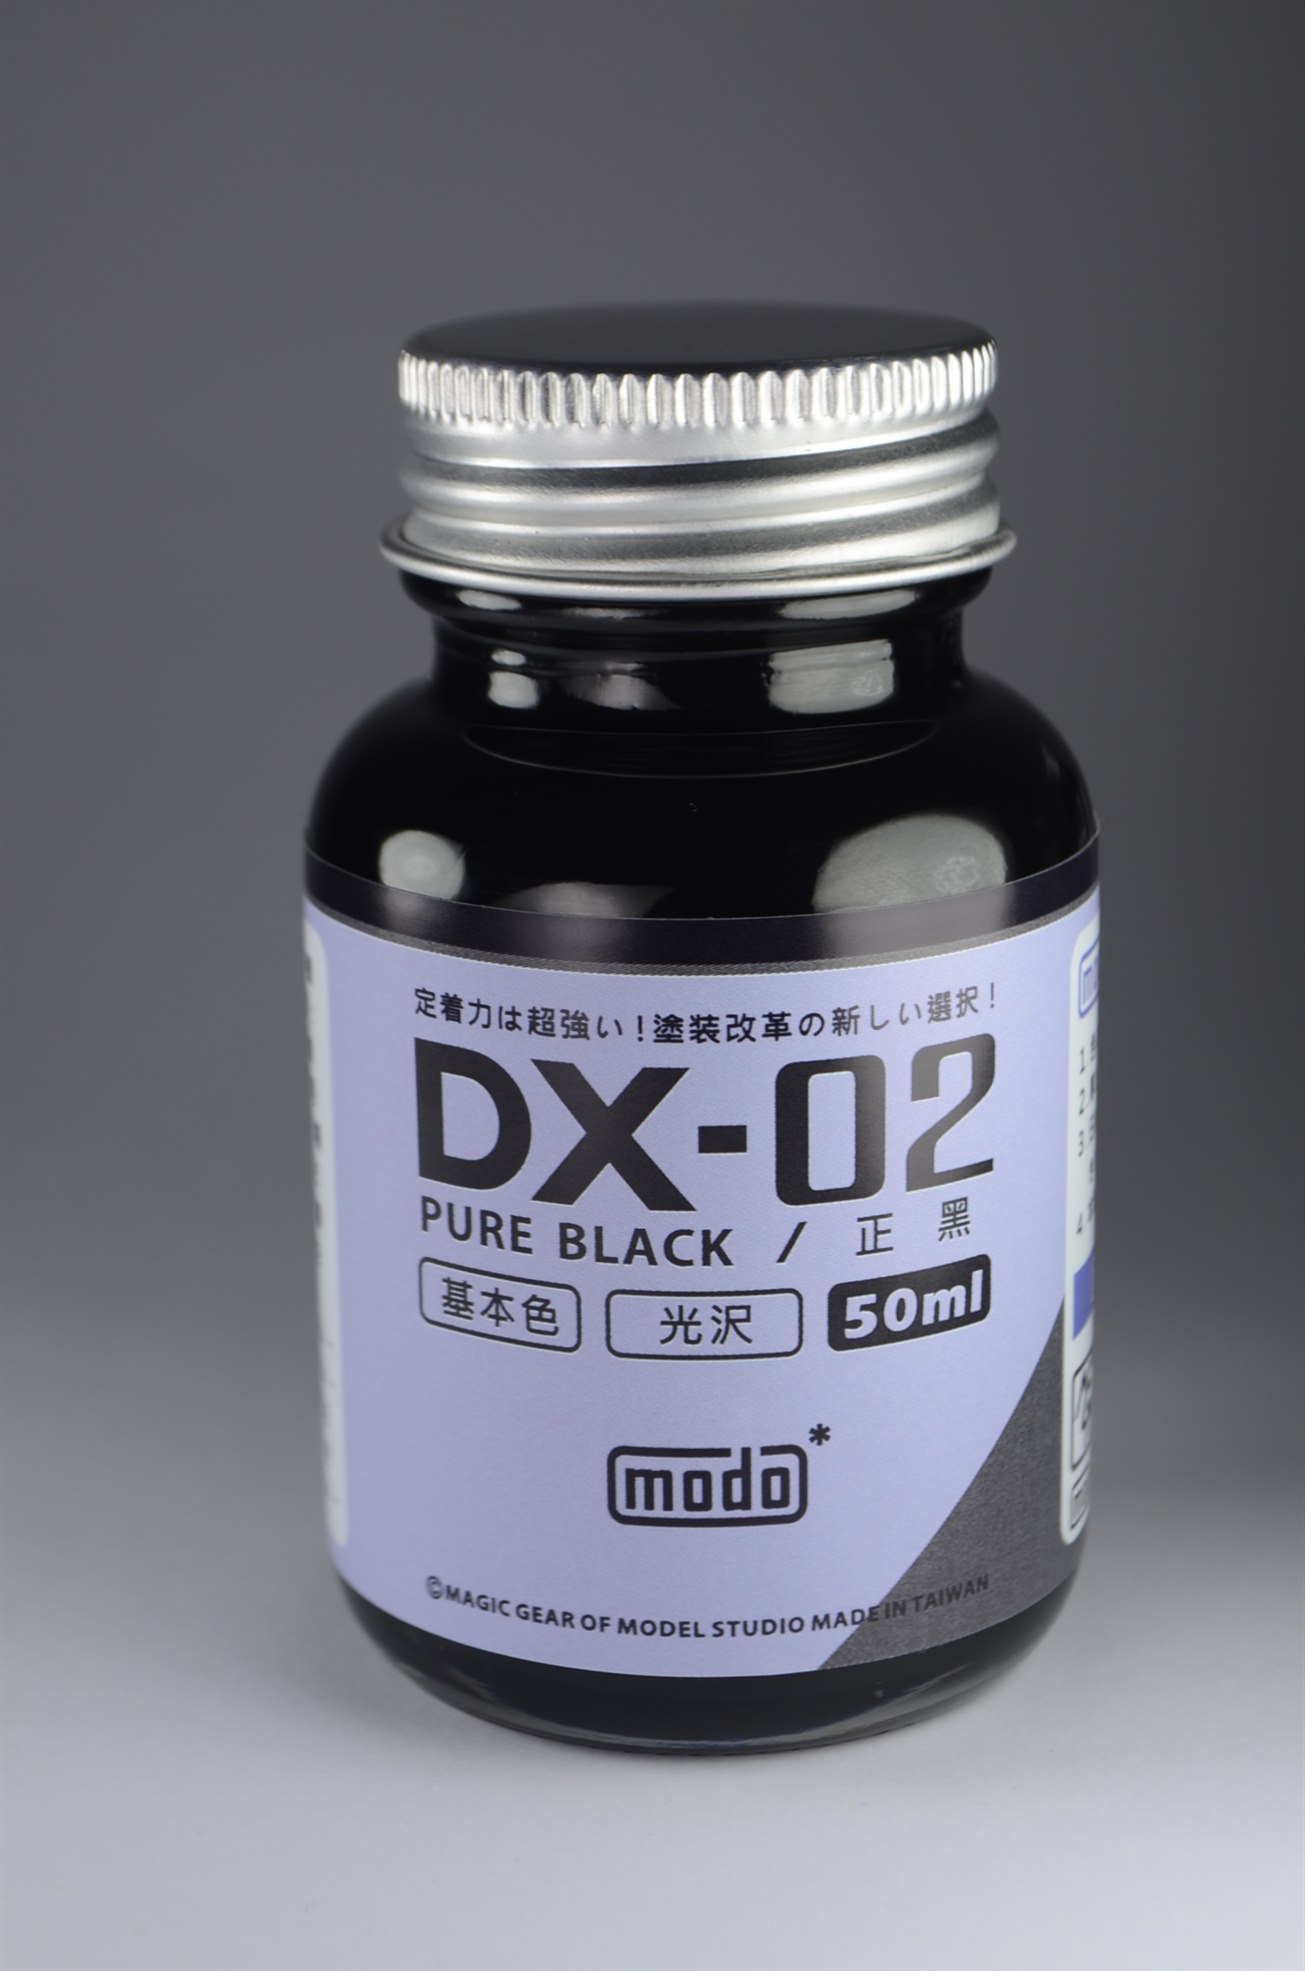 MODO DX-02 Pure Black 50ML